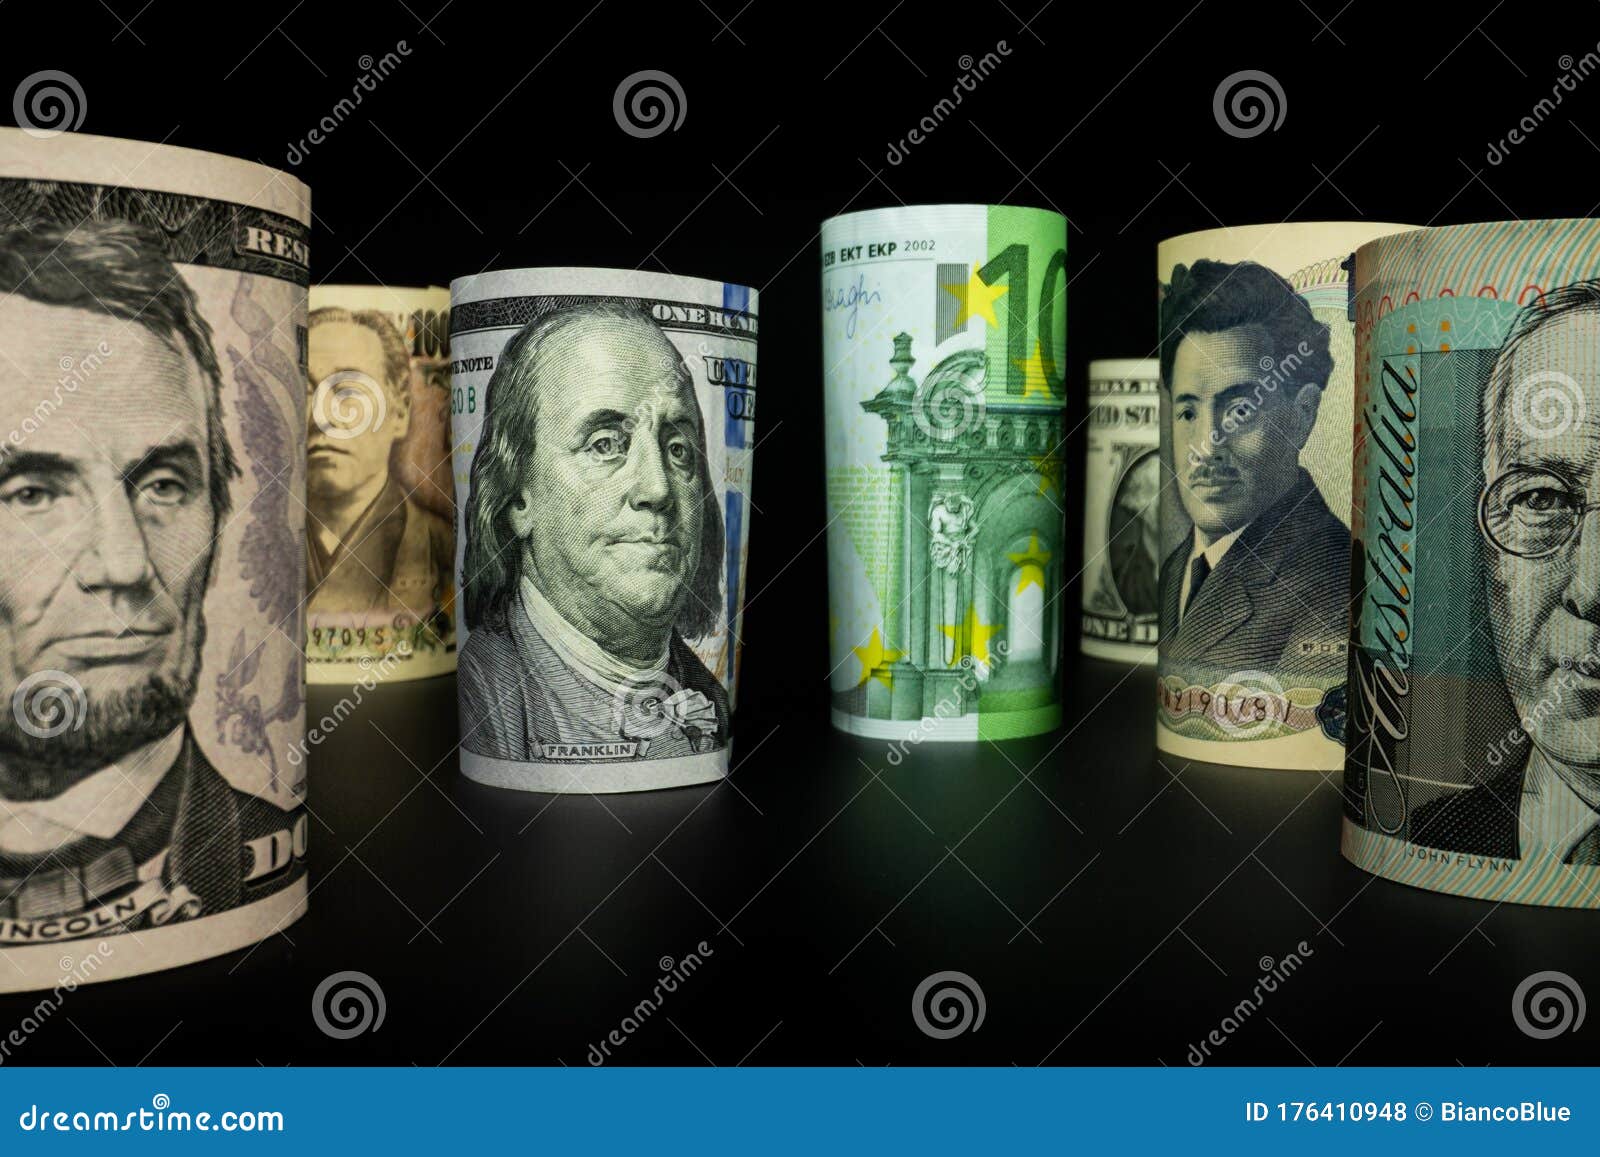 Международная валюта обмен шорты и лонги на биткоин